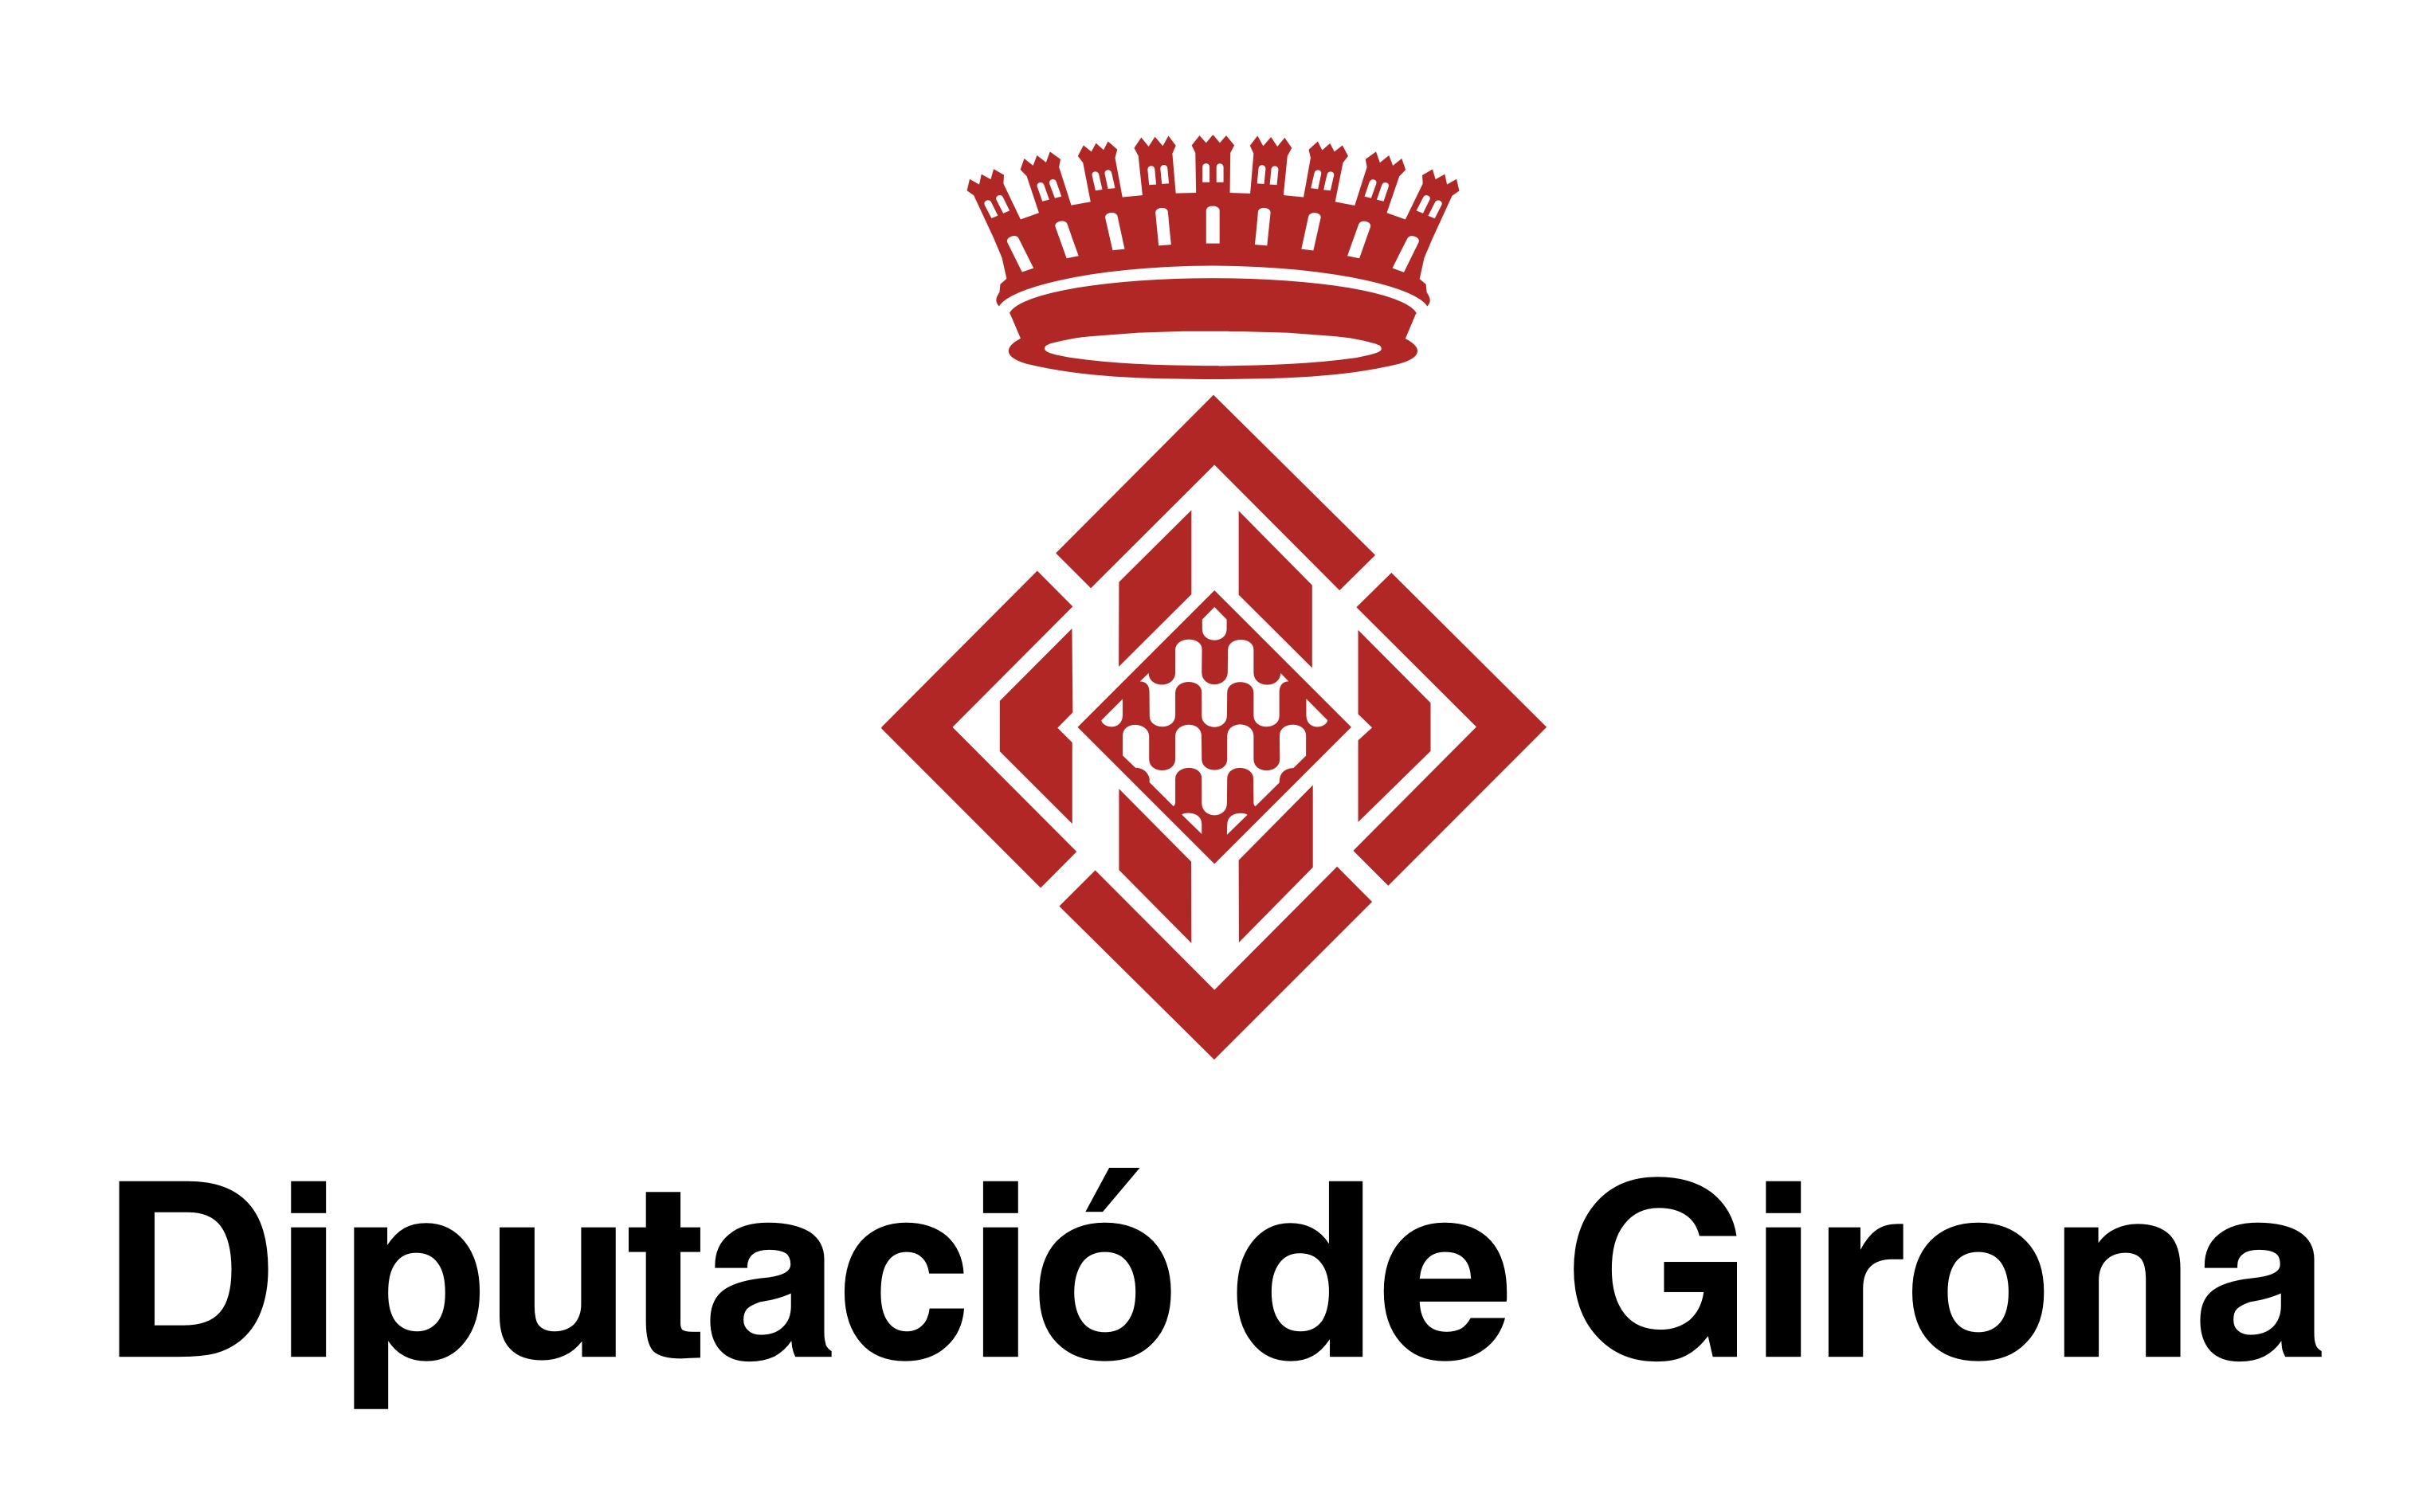 With the support of Diputació de Girona (DIPLAB)